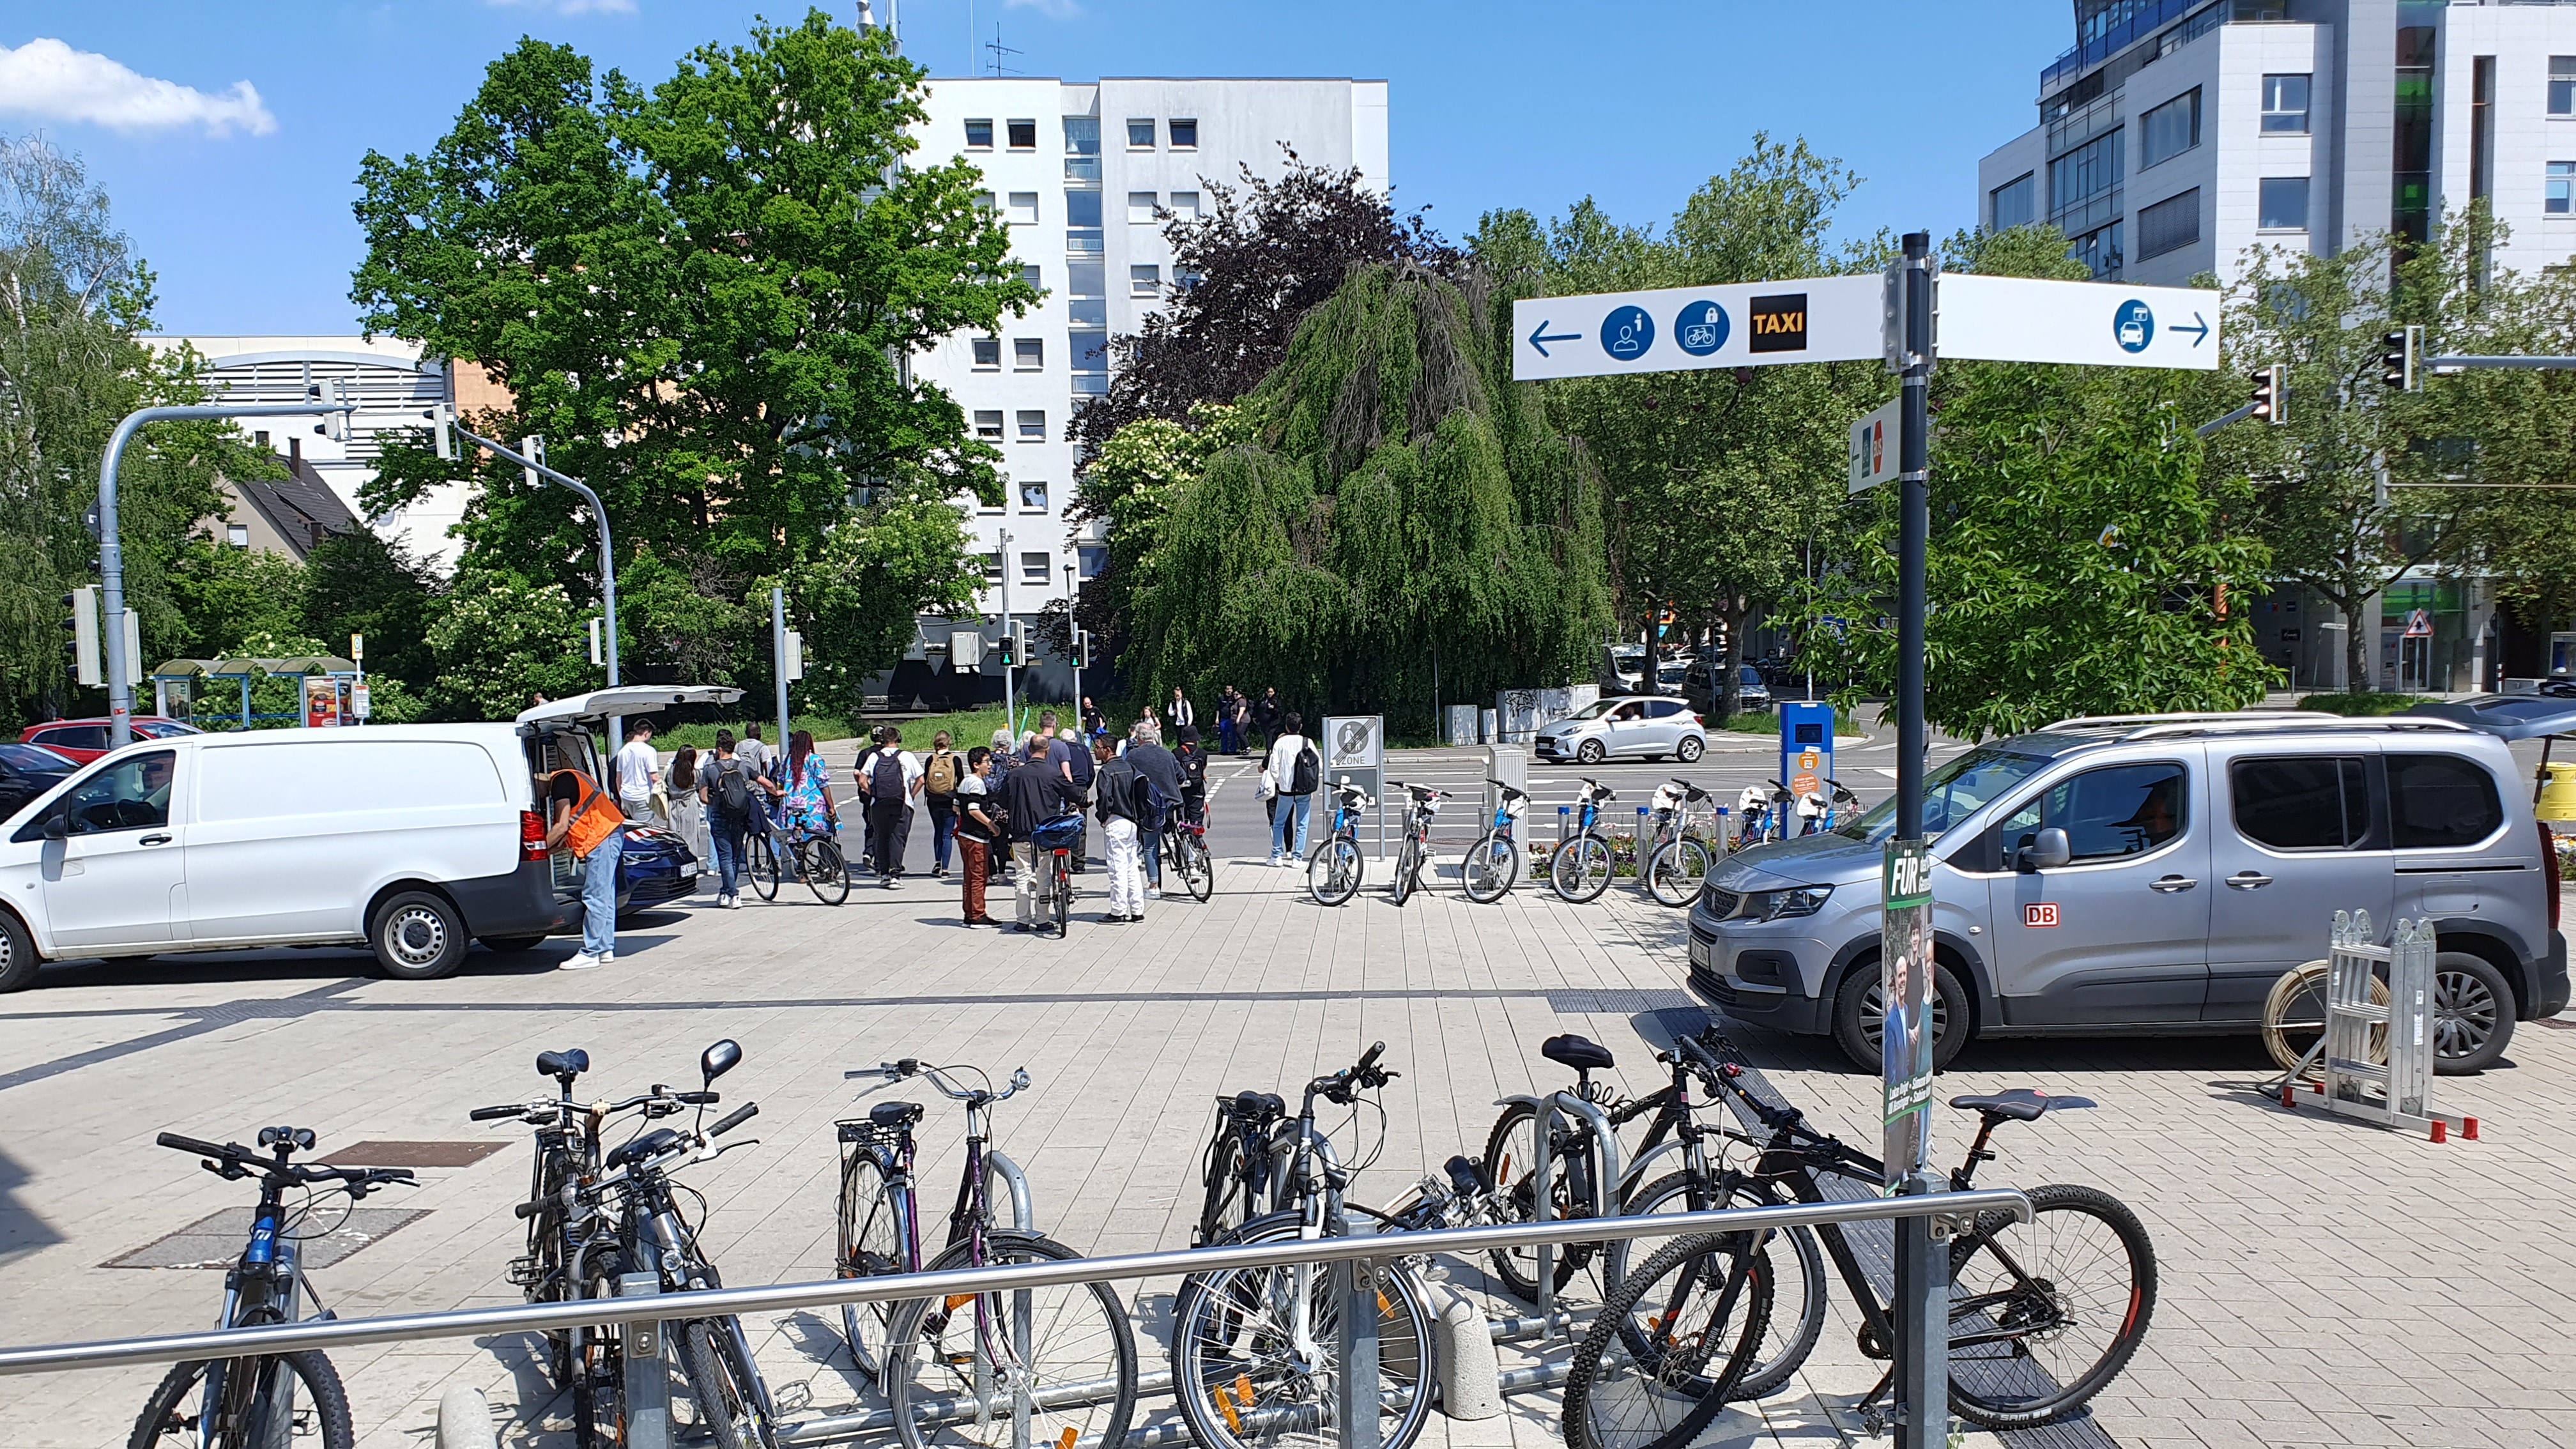 Nach der S-Bahn ins Taxi, aufs (Regio-)Rad, zum Bus oder zu Fuß zum Einkaufen. Oder doch lieber ins Auto steigen? Mobilität hat viele Wege. Das Bild entstand am Mobilitätspunkt am Sindelfinger Bahnhof.